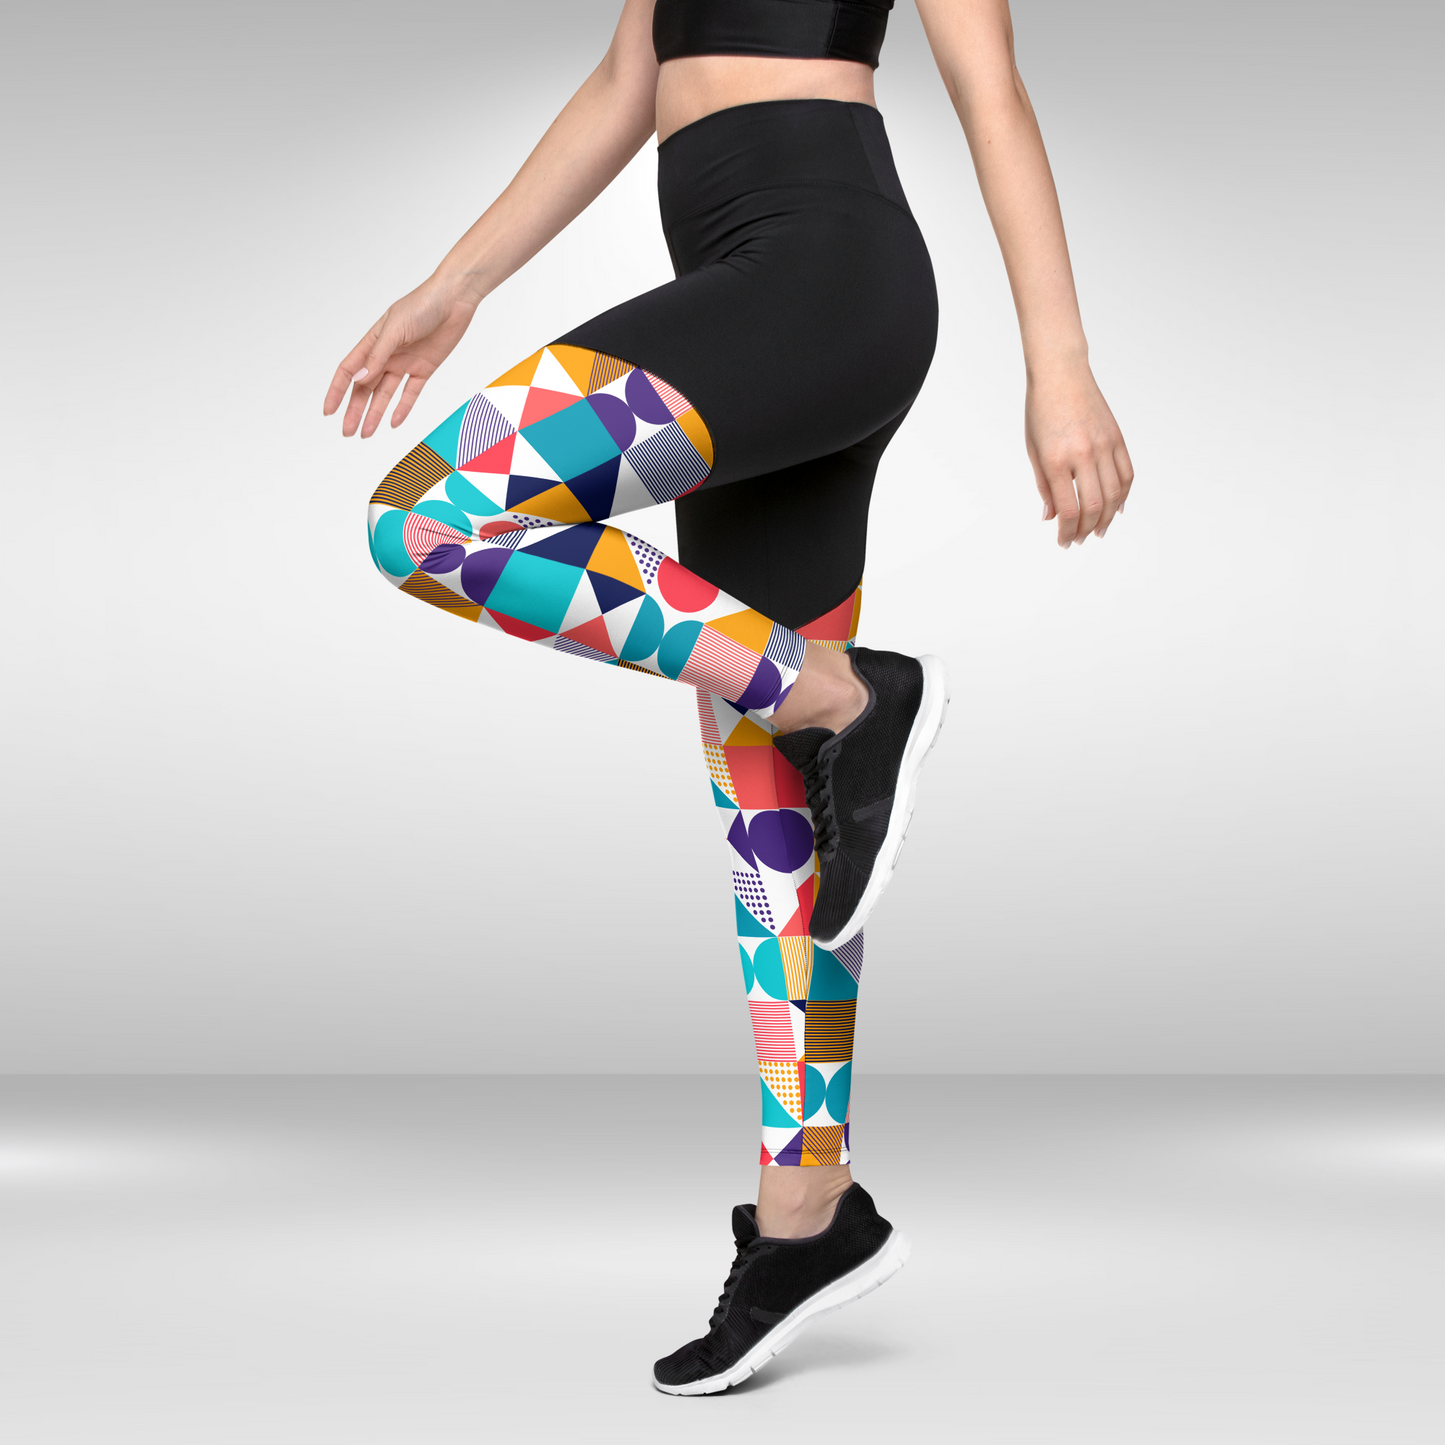 Women Compression Legging - Multi Colour Sporty Print